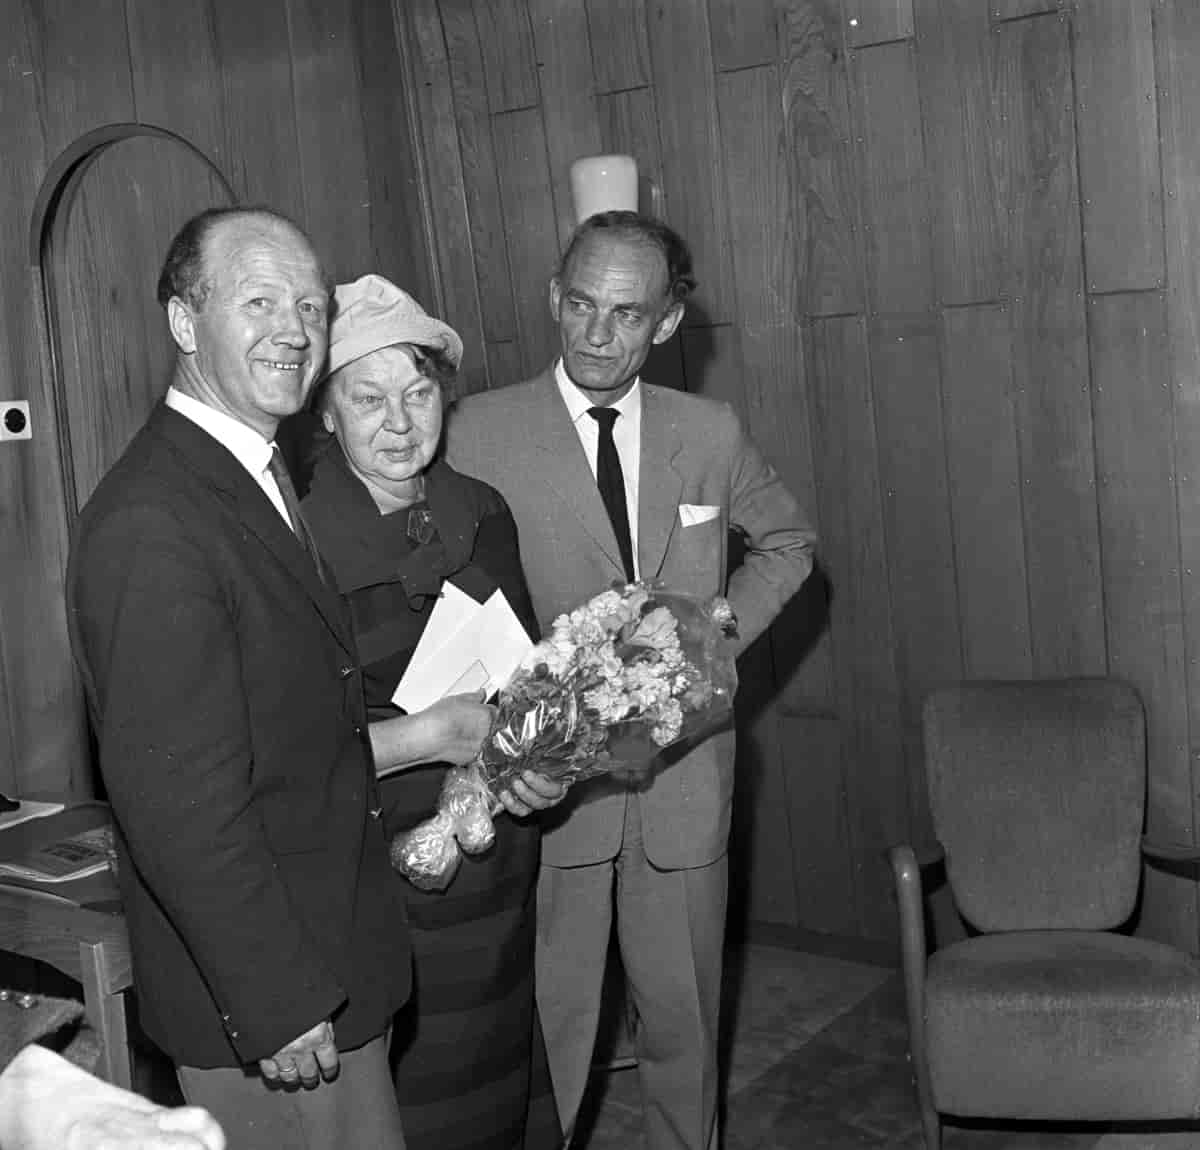 Aslaug Vaa mottek Ønskediktprisen frå NRK i 1963